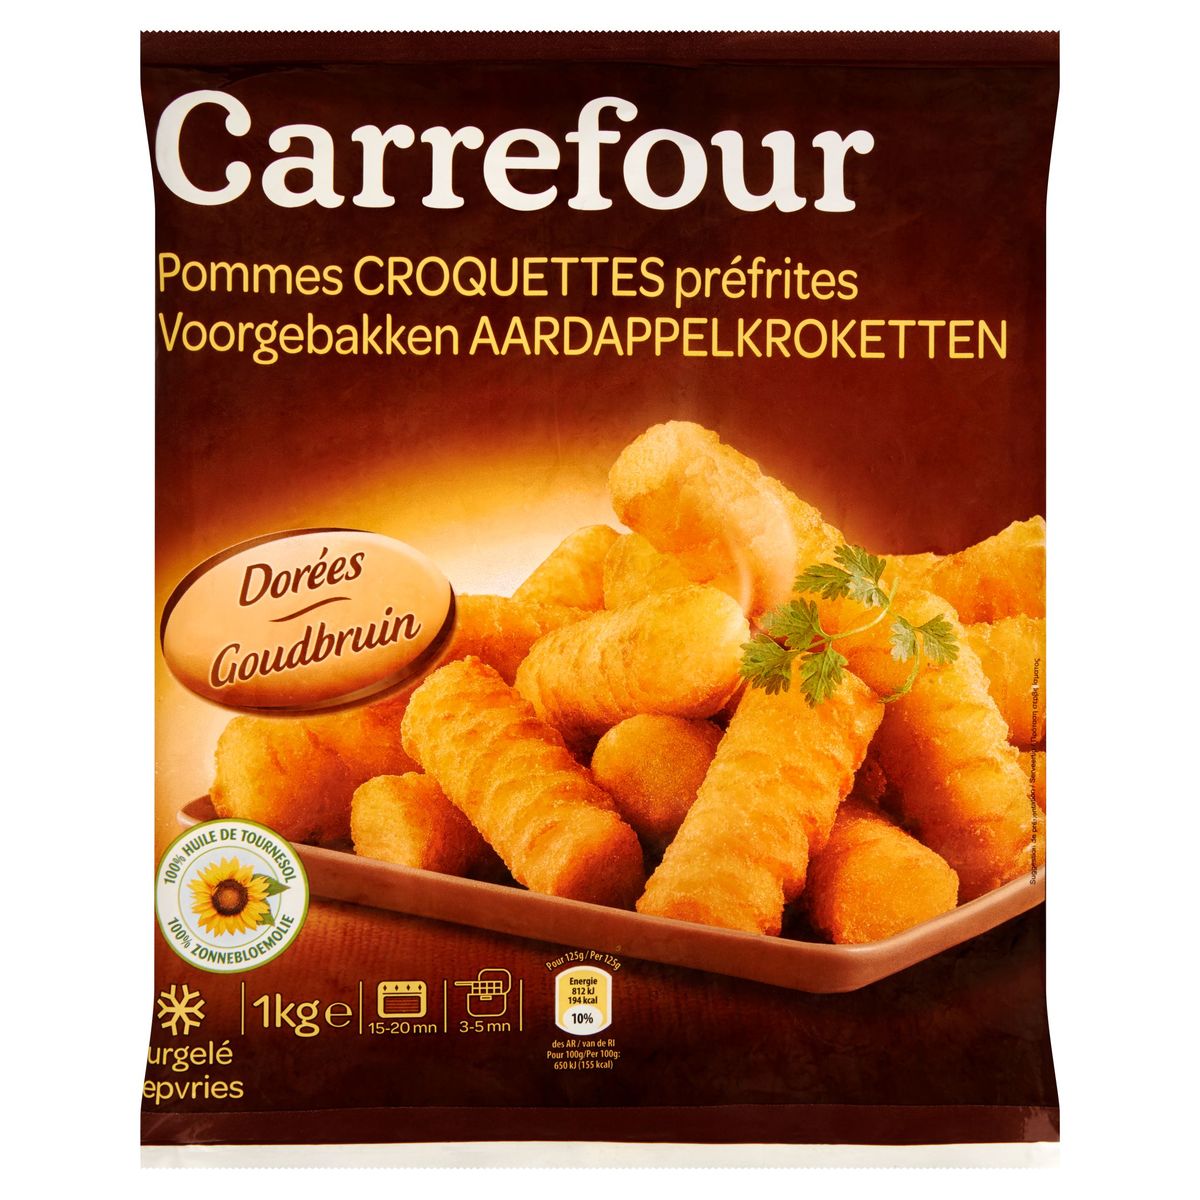 Carrefour Voorgebakken Aardappelkroketten Goudbruin 1 kg